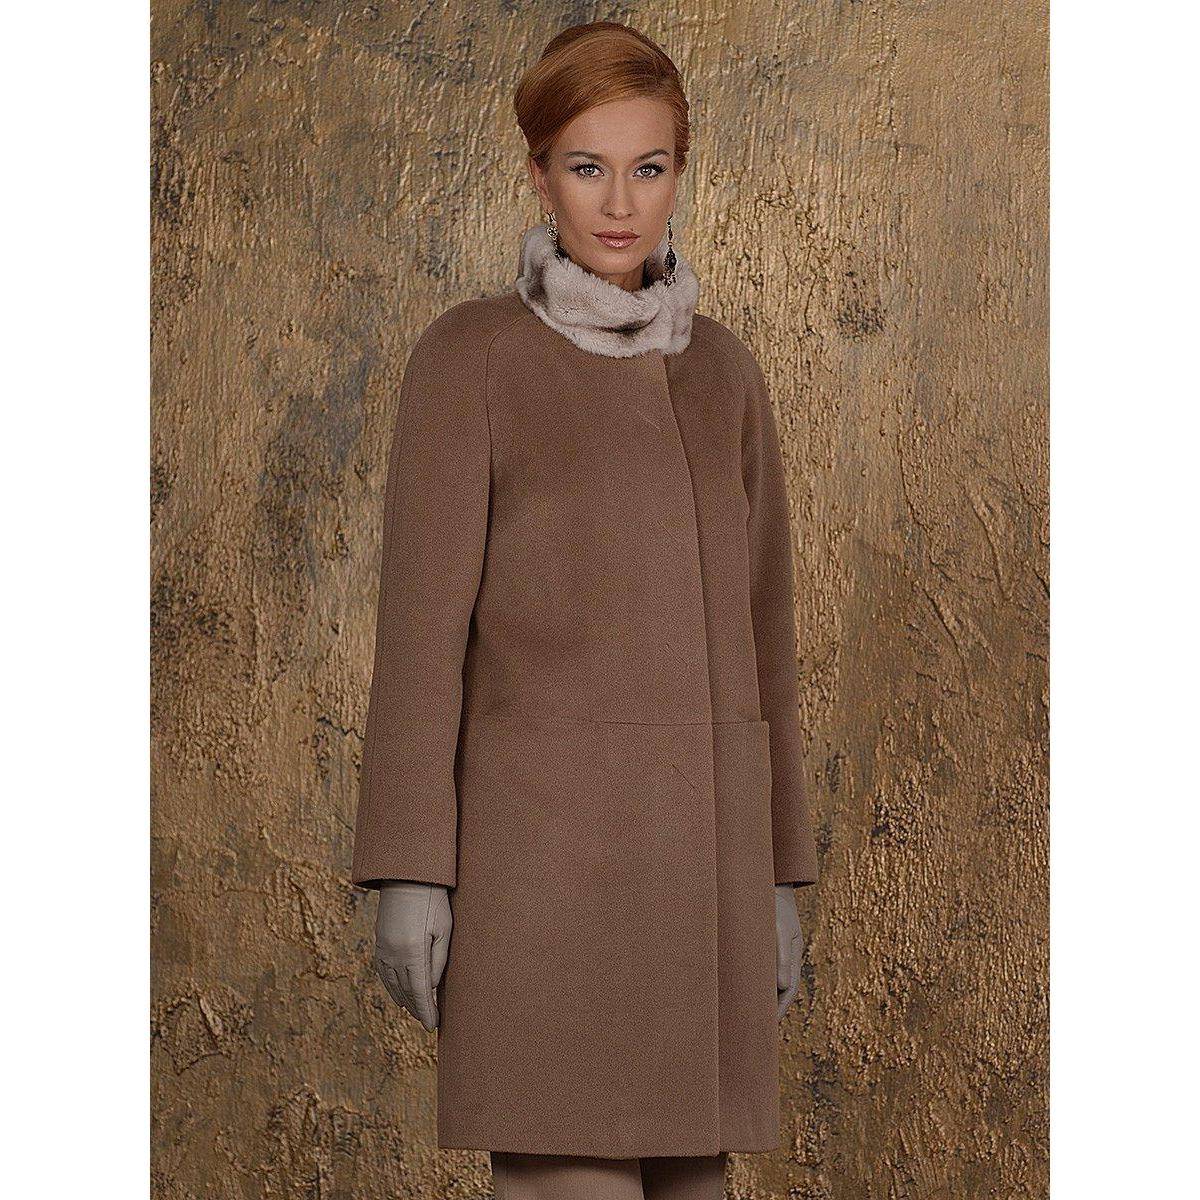 Стильные короткие пальто для женщин: с чем носить и сочетать для создания модного лука?